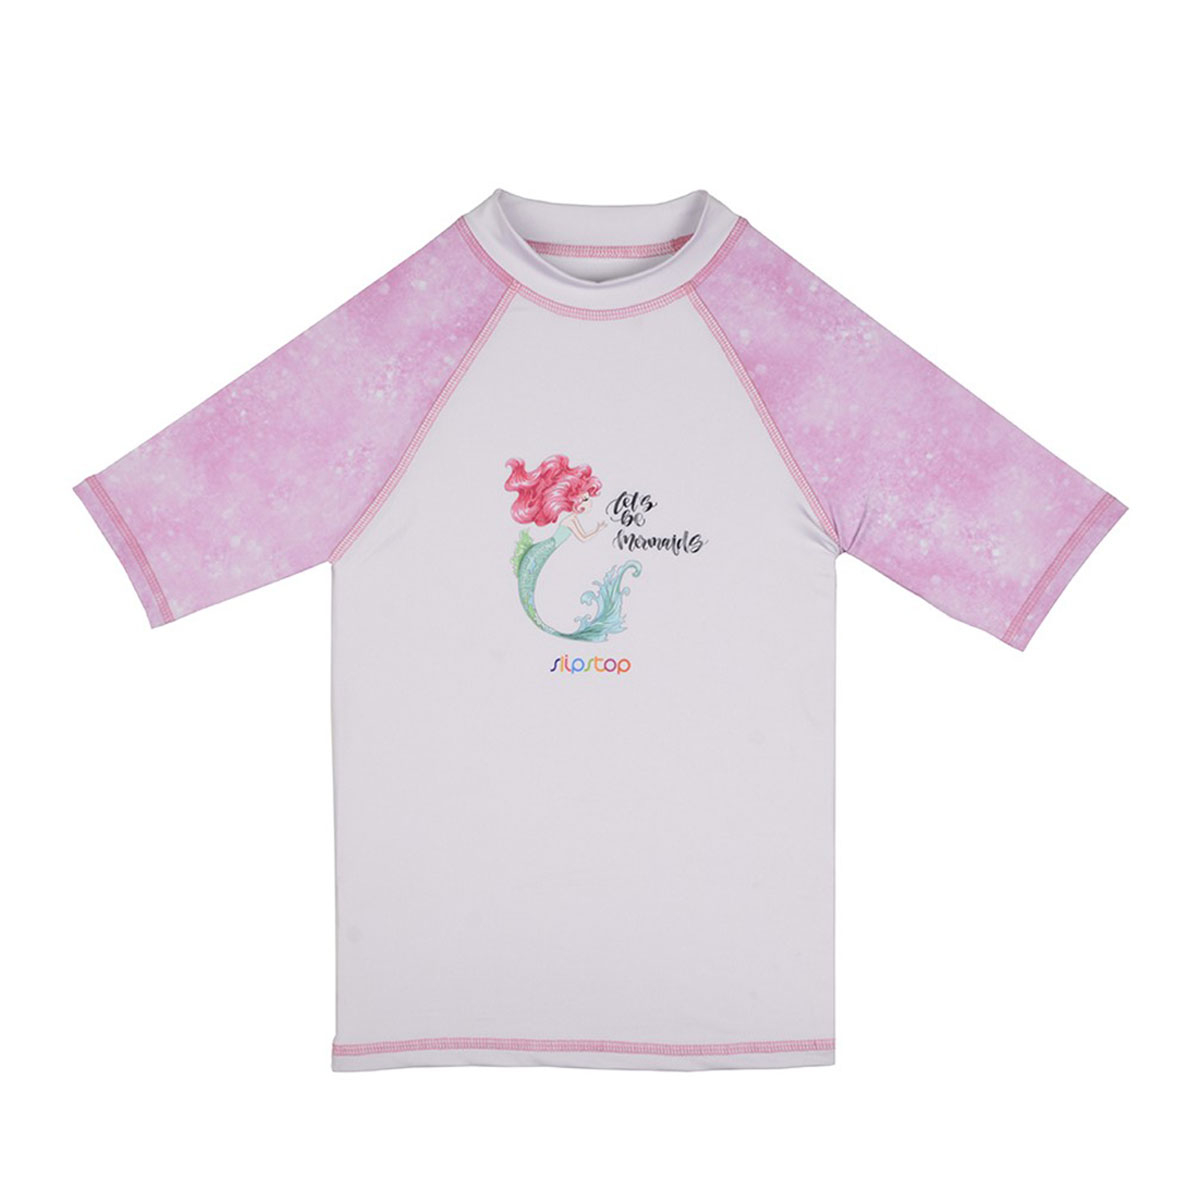 Παιδική Μπλούζα Με Αντηλιακή Προστασία Slipstop Mermaid 8-9 8-9